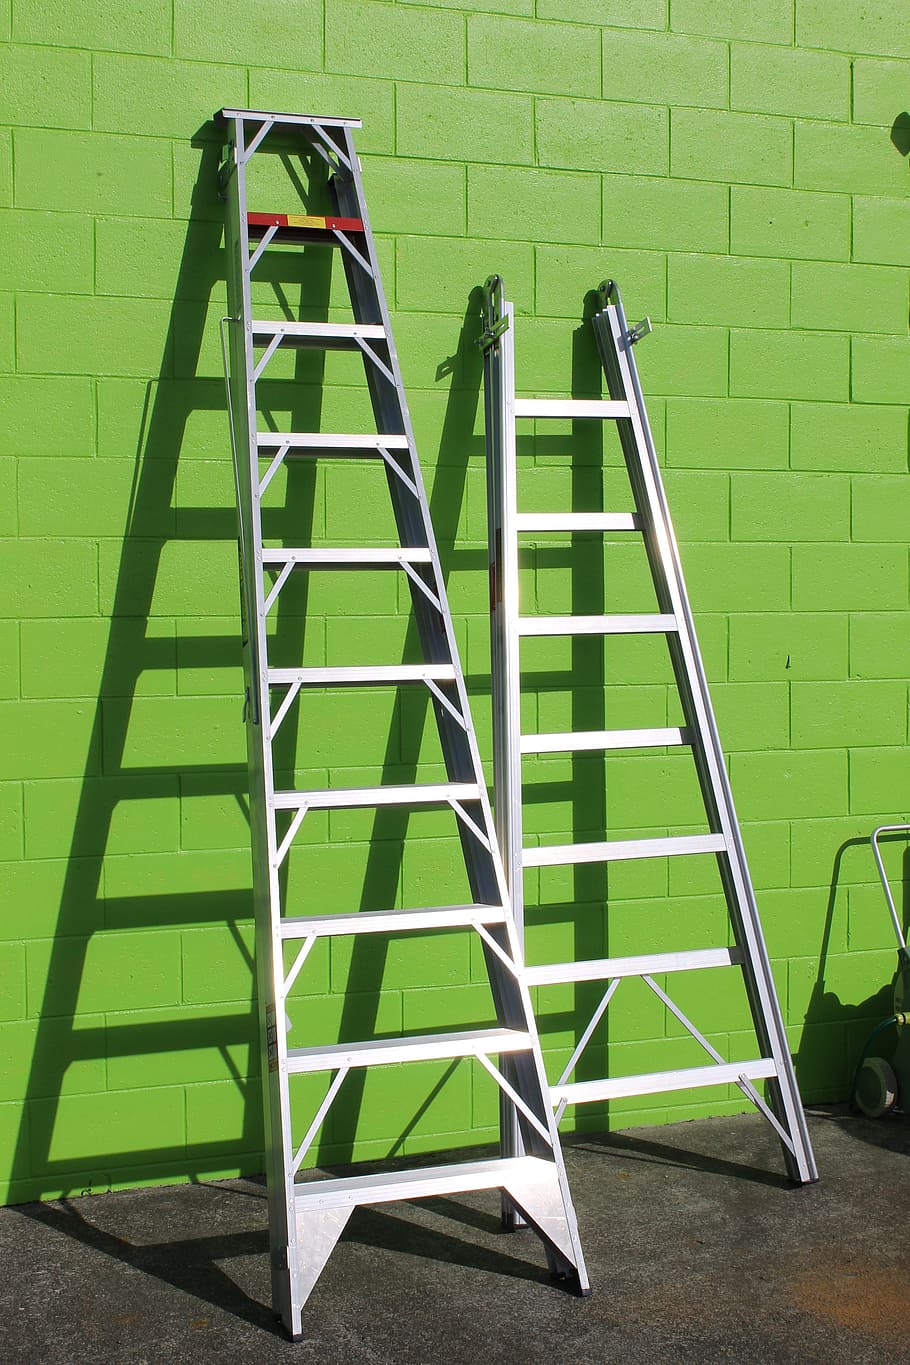 dos, gris, escaleras de metal, verde, pared, escalera, altura, alcance, reparación, techado